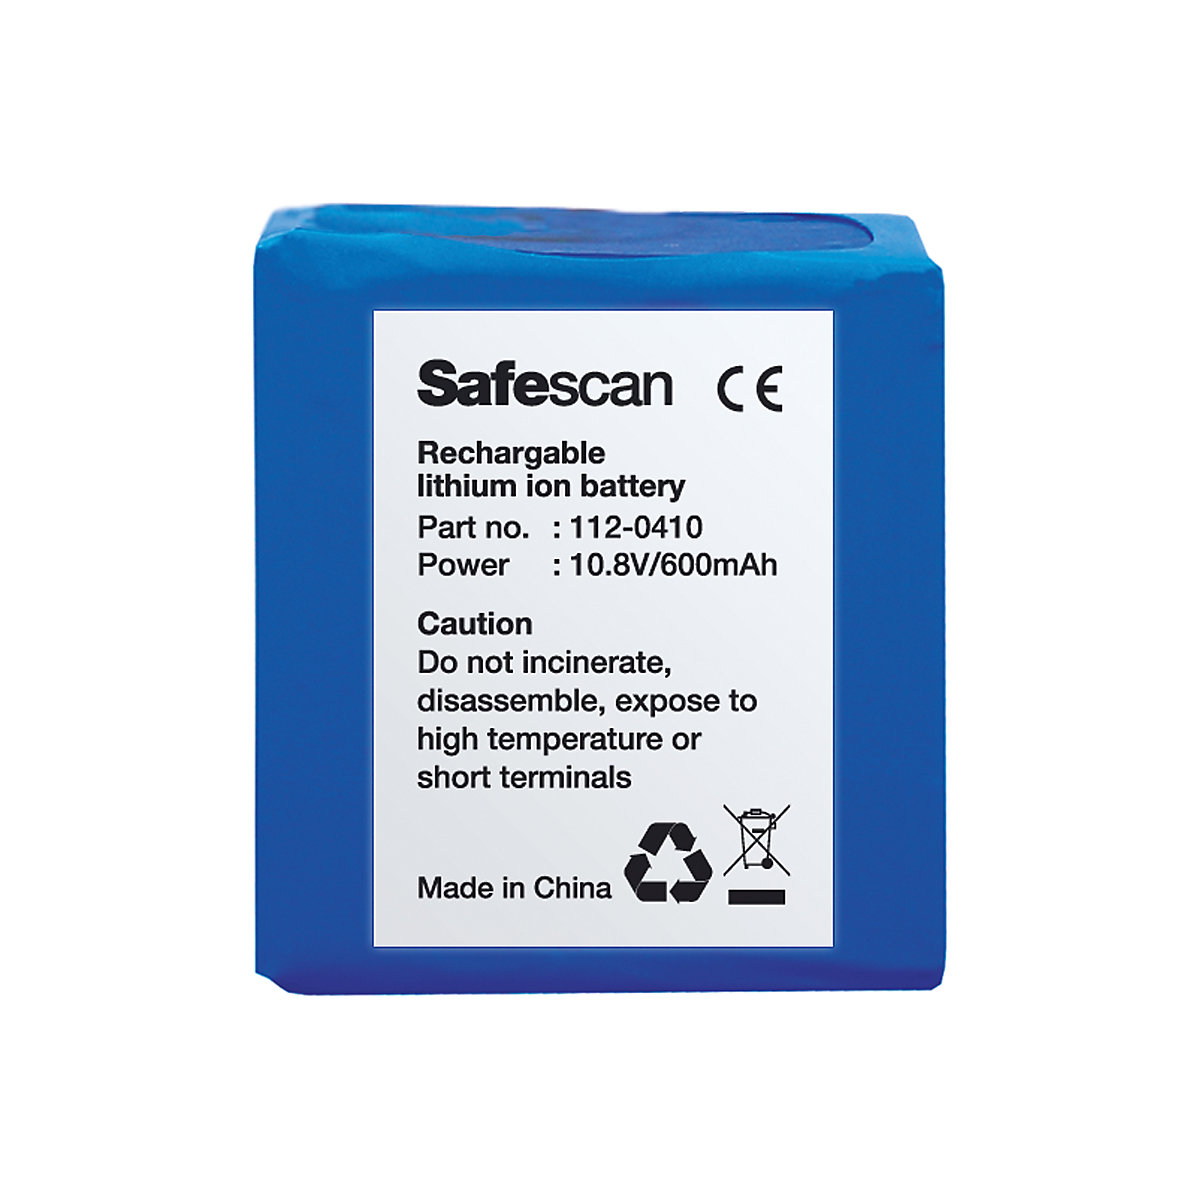 Batería recargable – Safescan